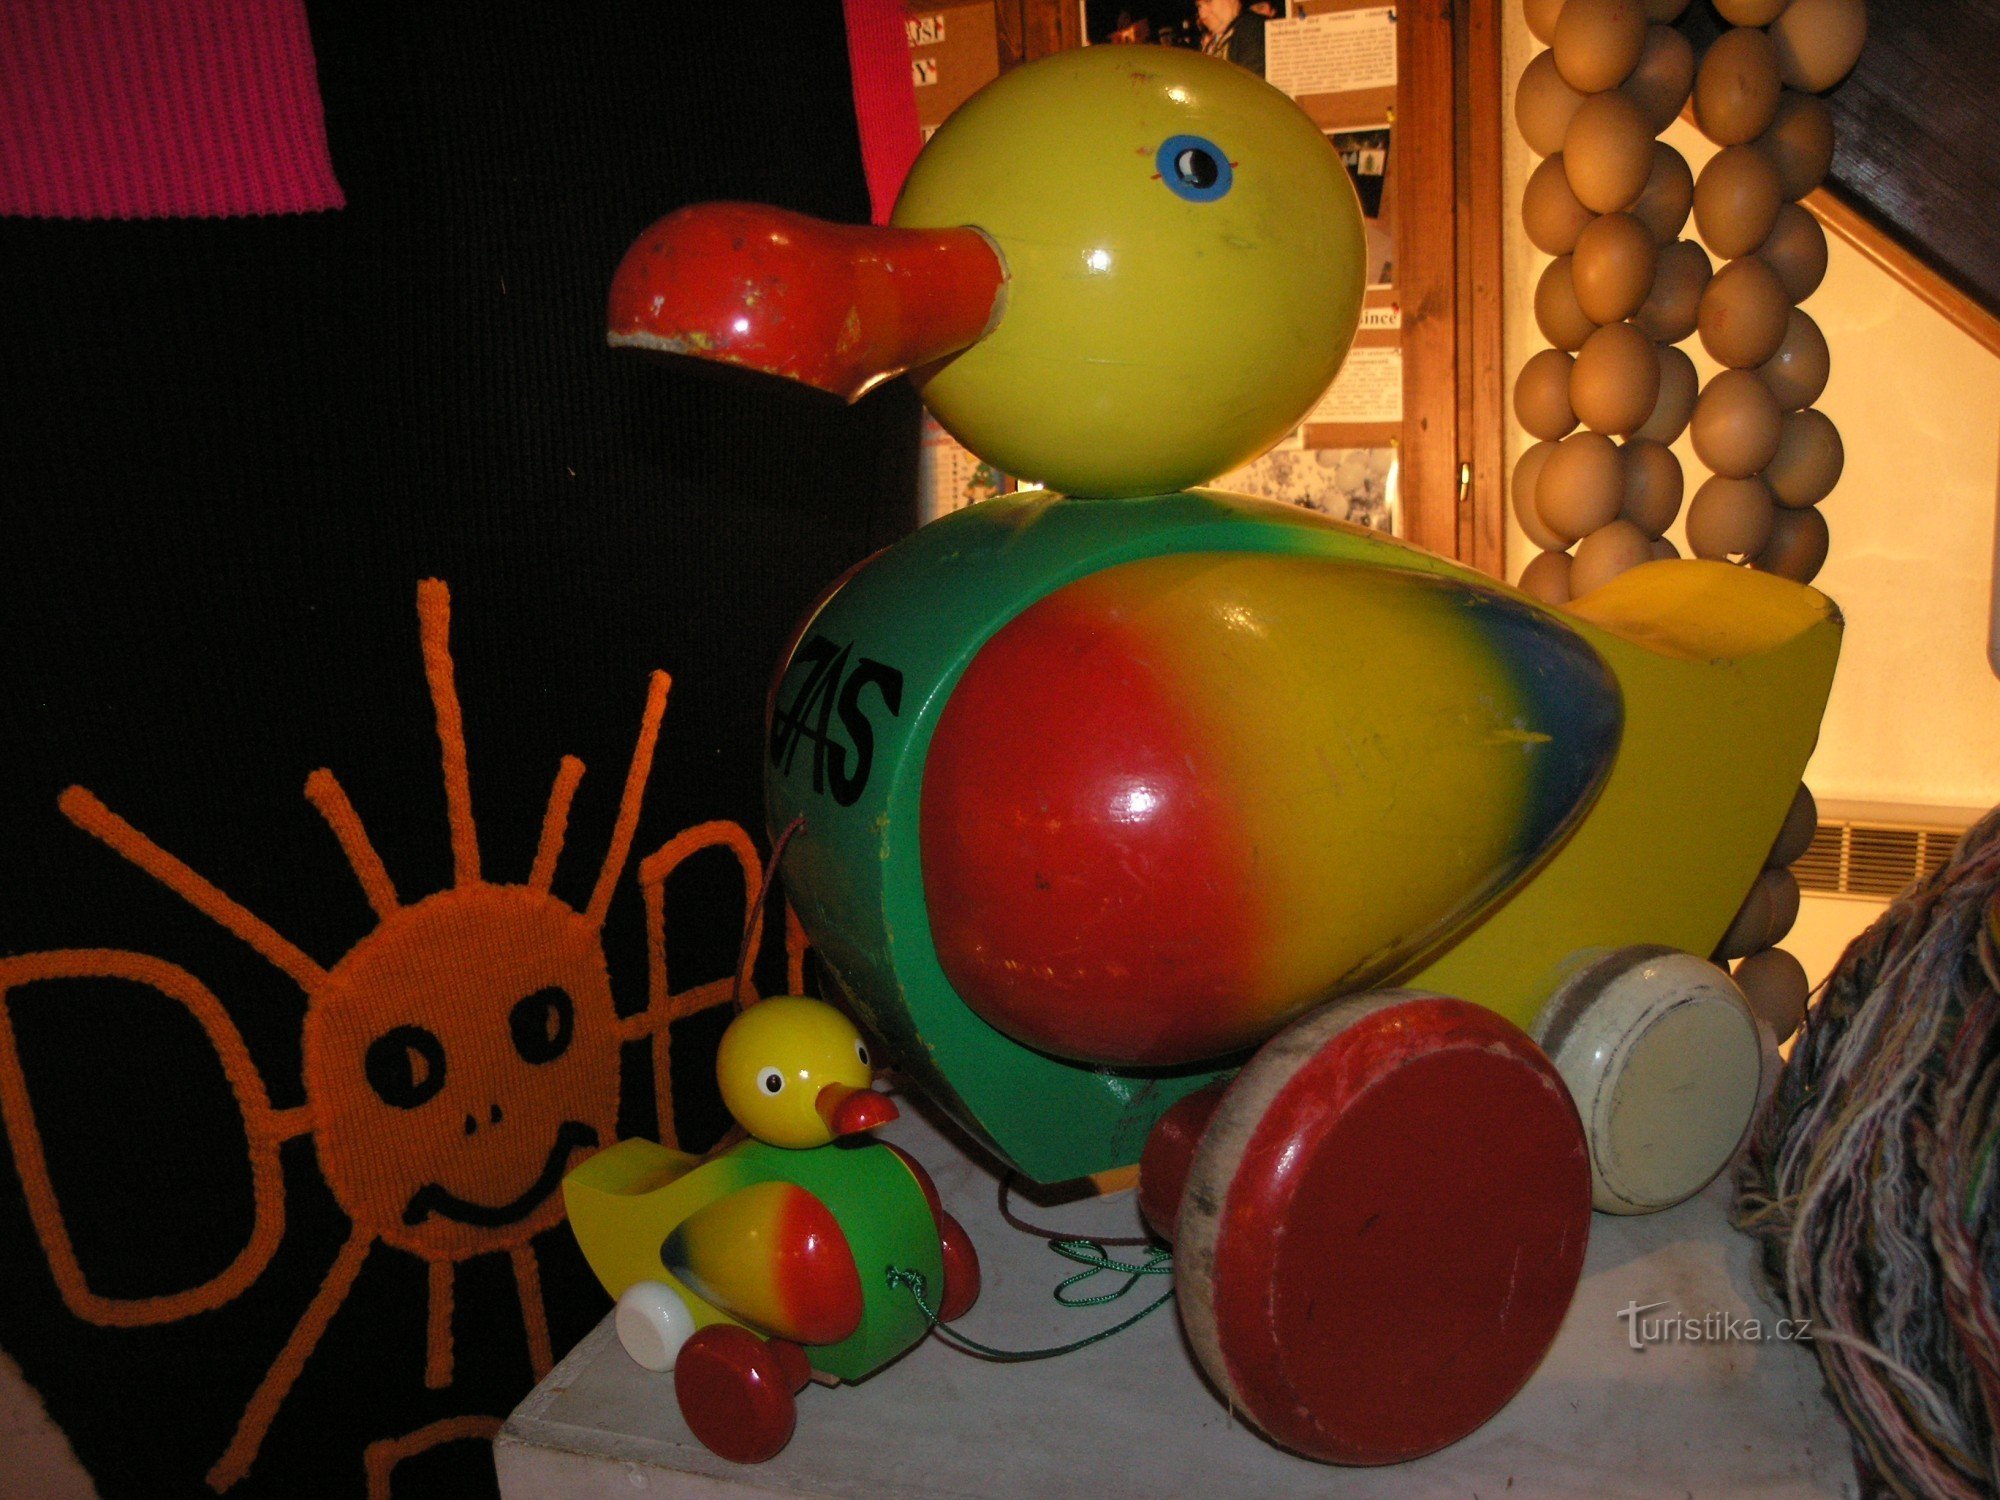 wooden duck - museum of curiosities - Pelhřimov